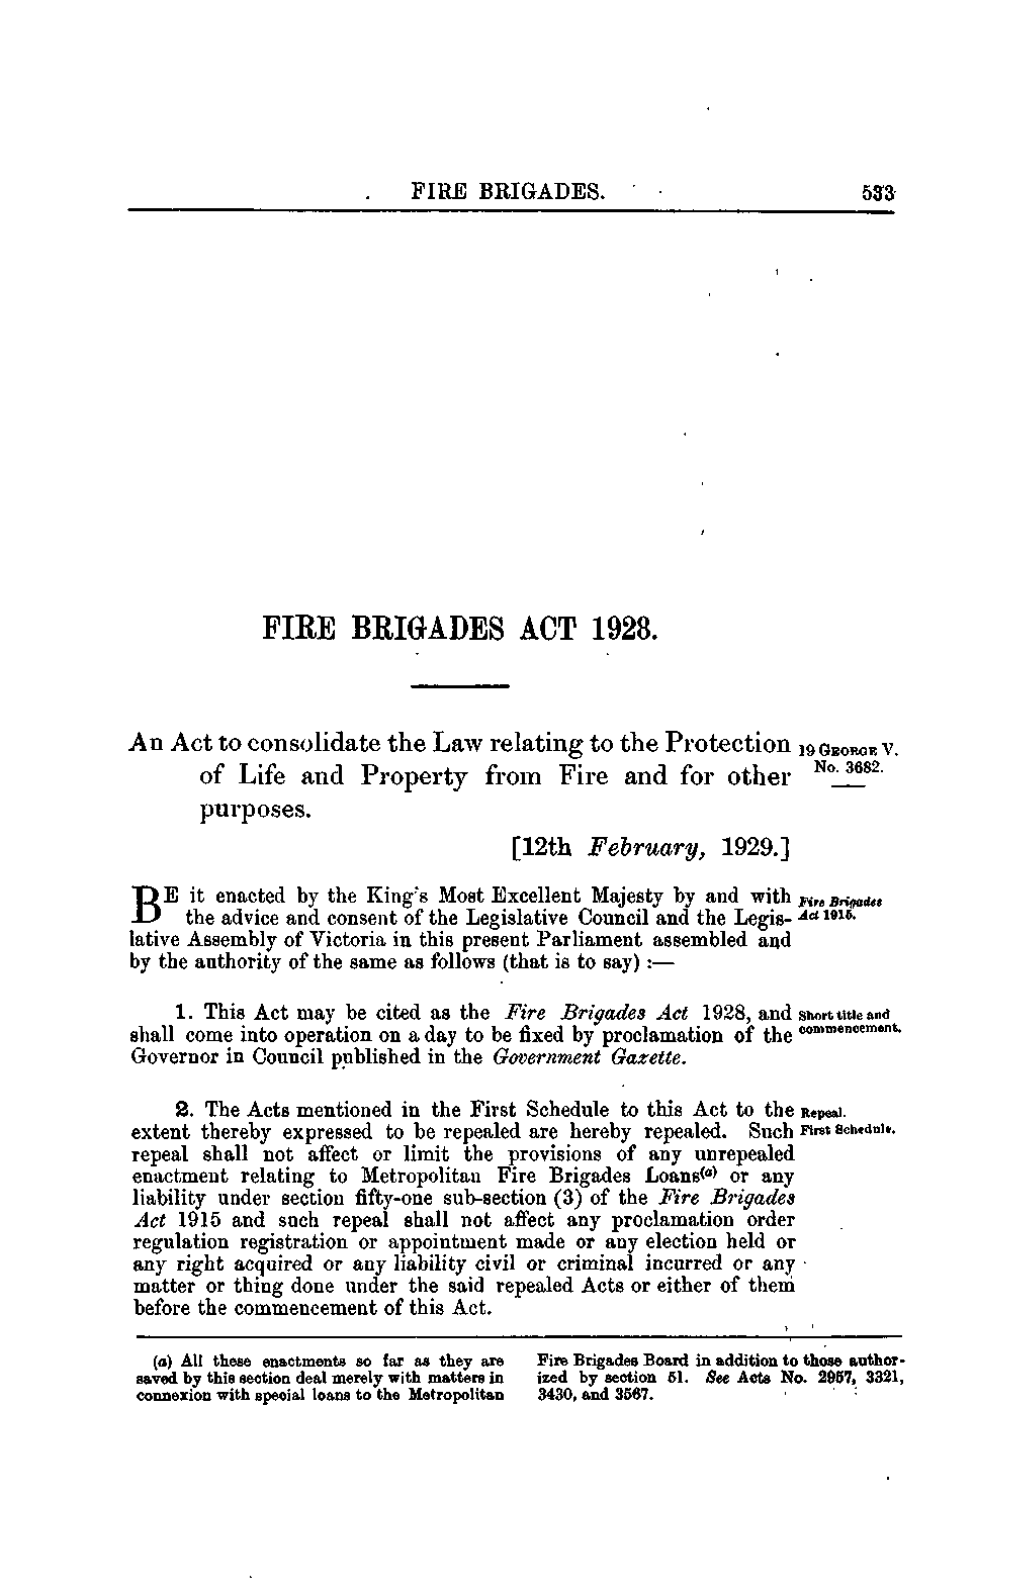 Fiee Brigades Act 1928